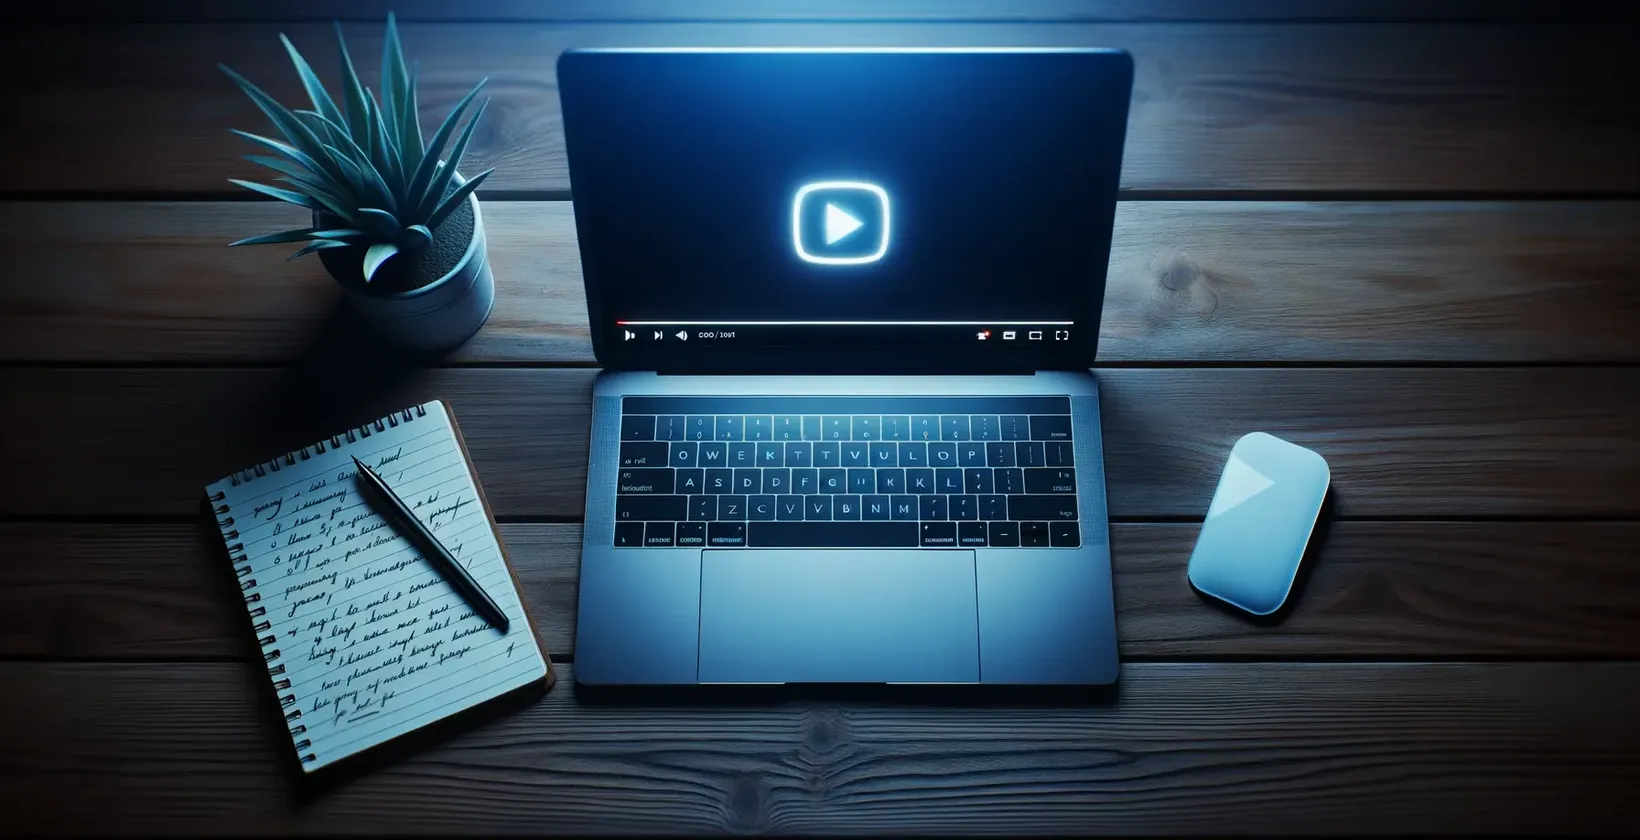 إضافة نص إلى الفيديو باستخدام مشهد KineMaster يظهر جهاز كمبيوتر محمول مع أيقونة تشغيل على دفتر الملاحظات